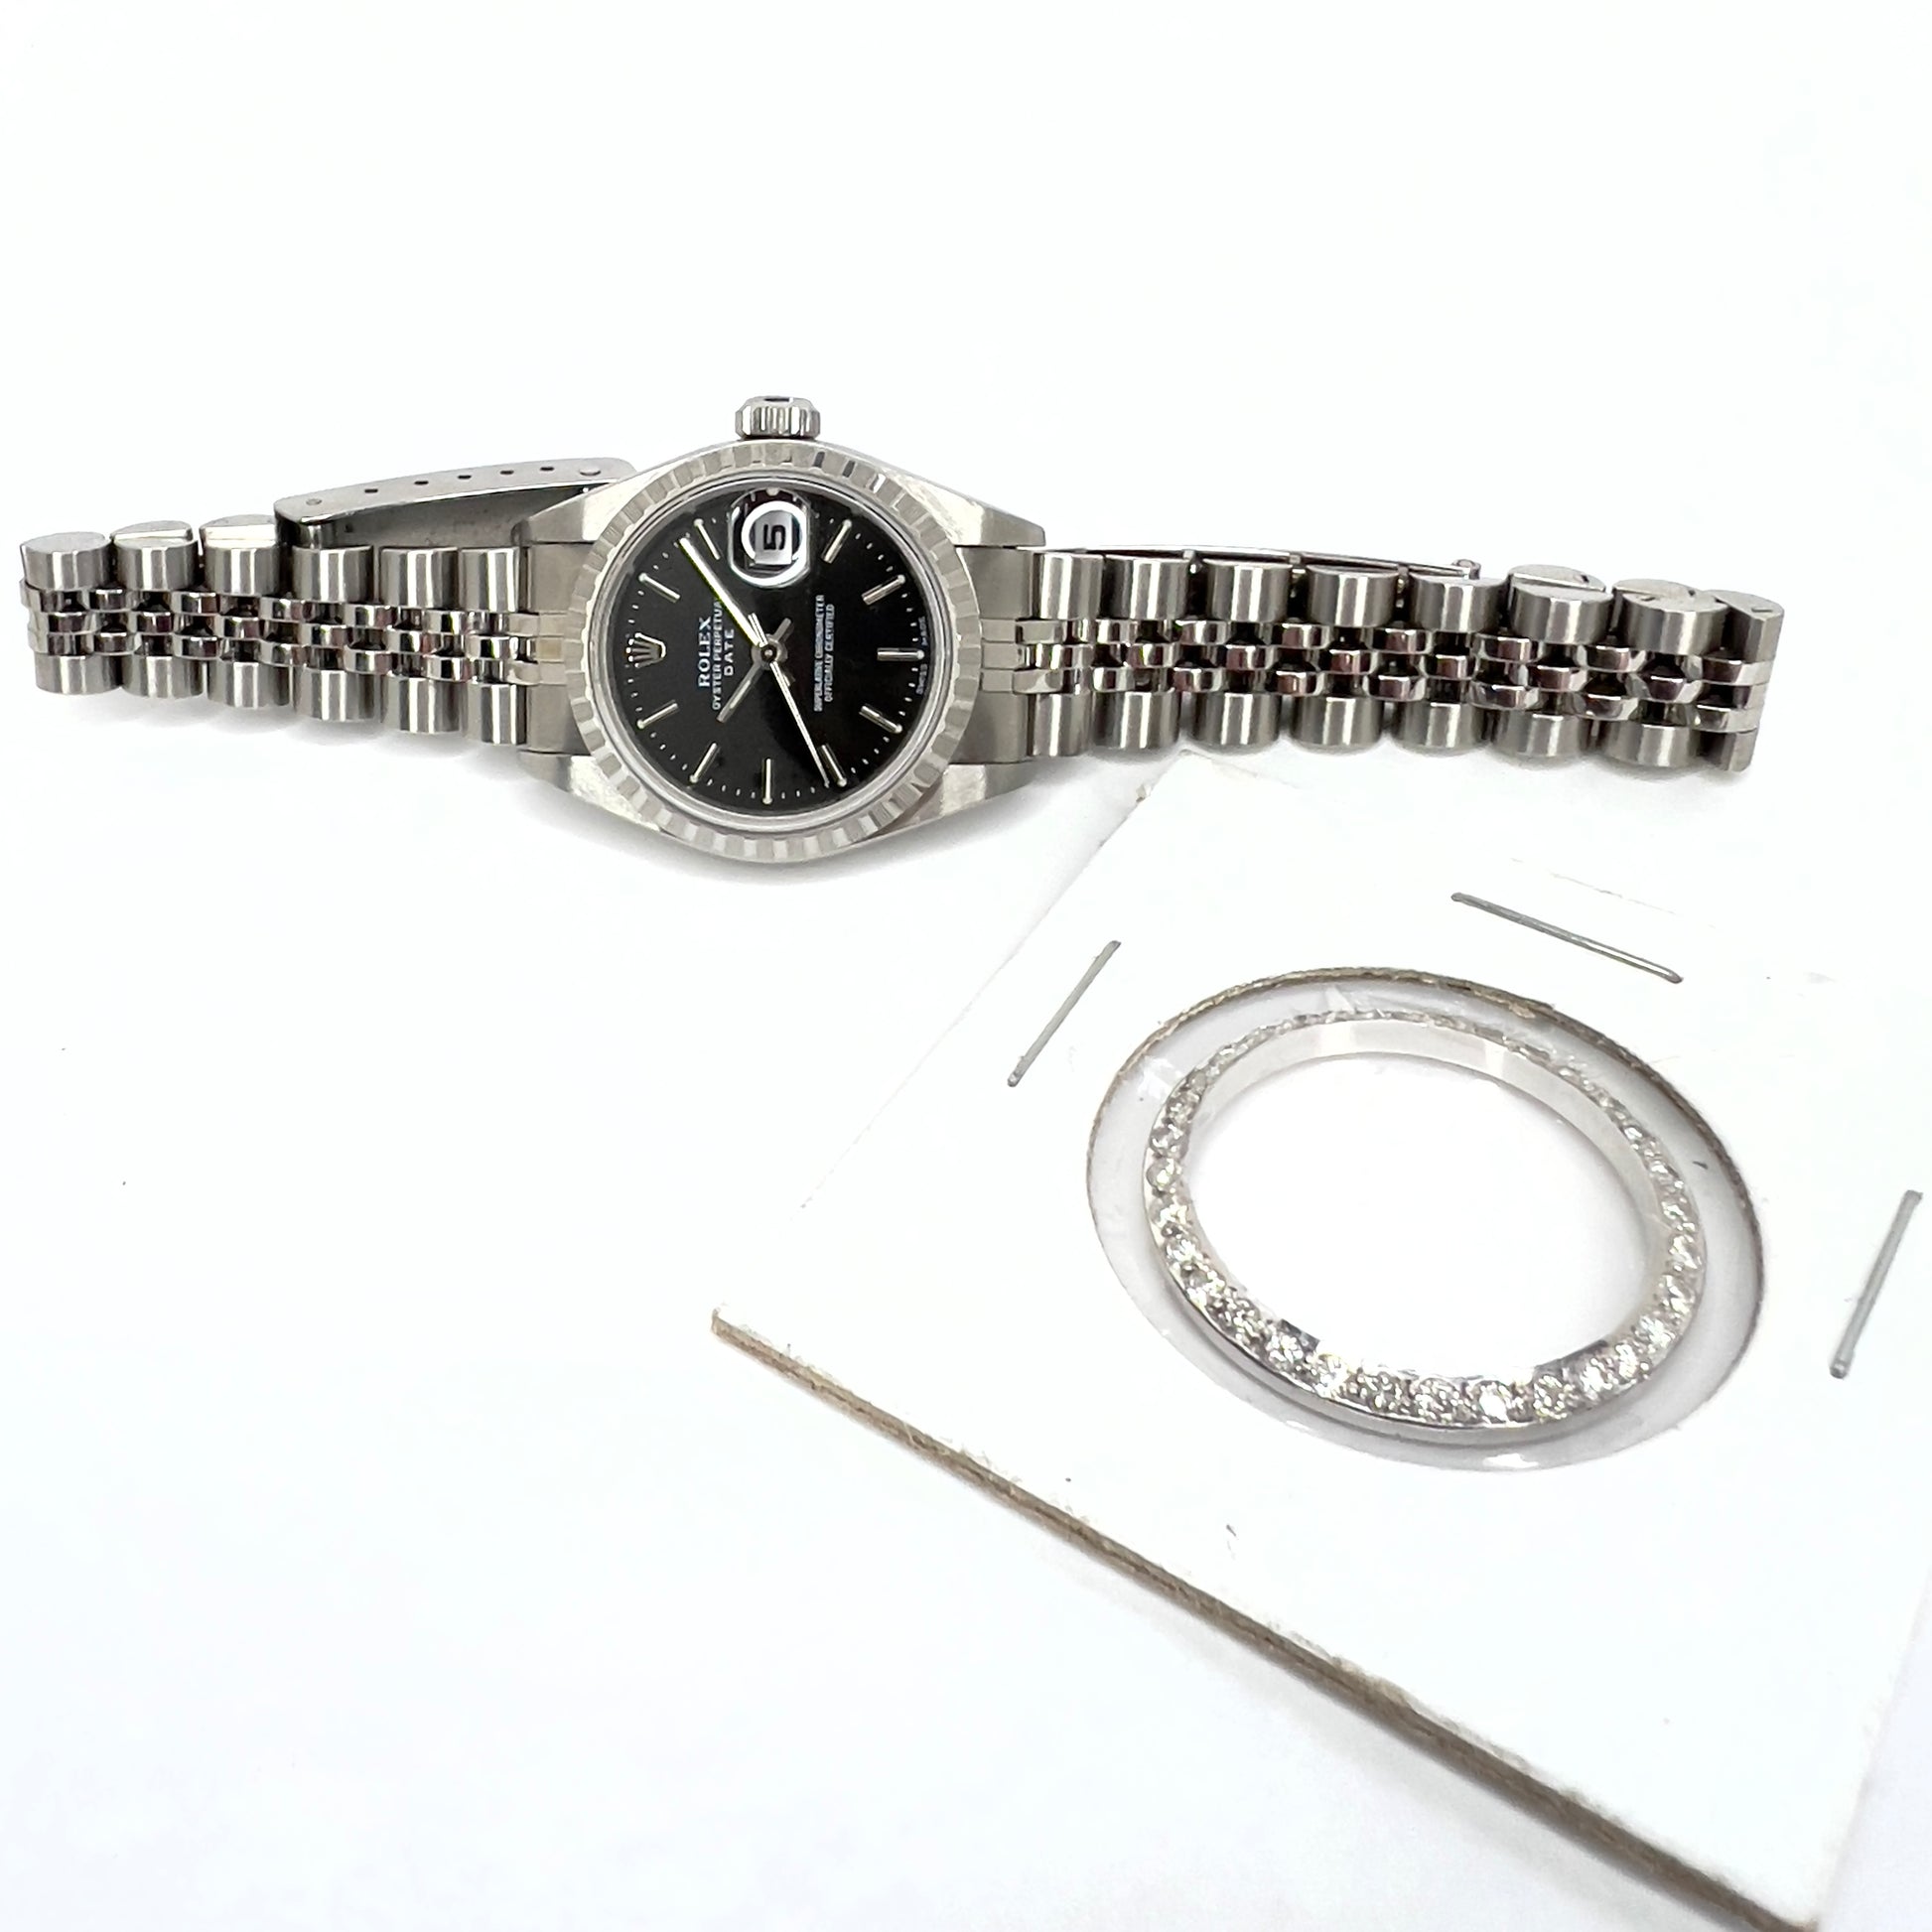 ROLEX DATE Automatic 26mm Steel Jubilee Bracelet Watch